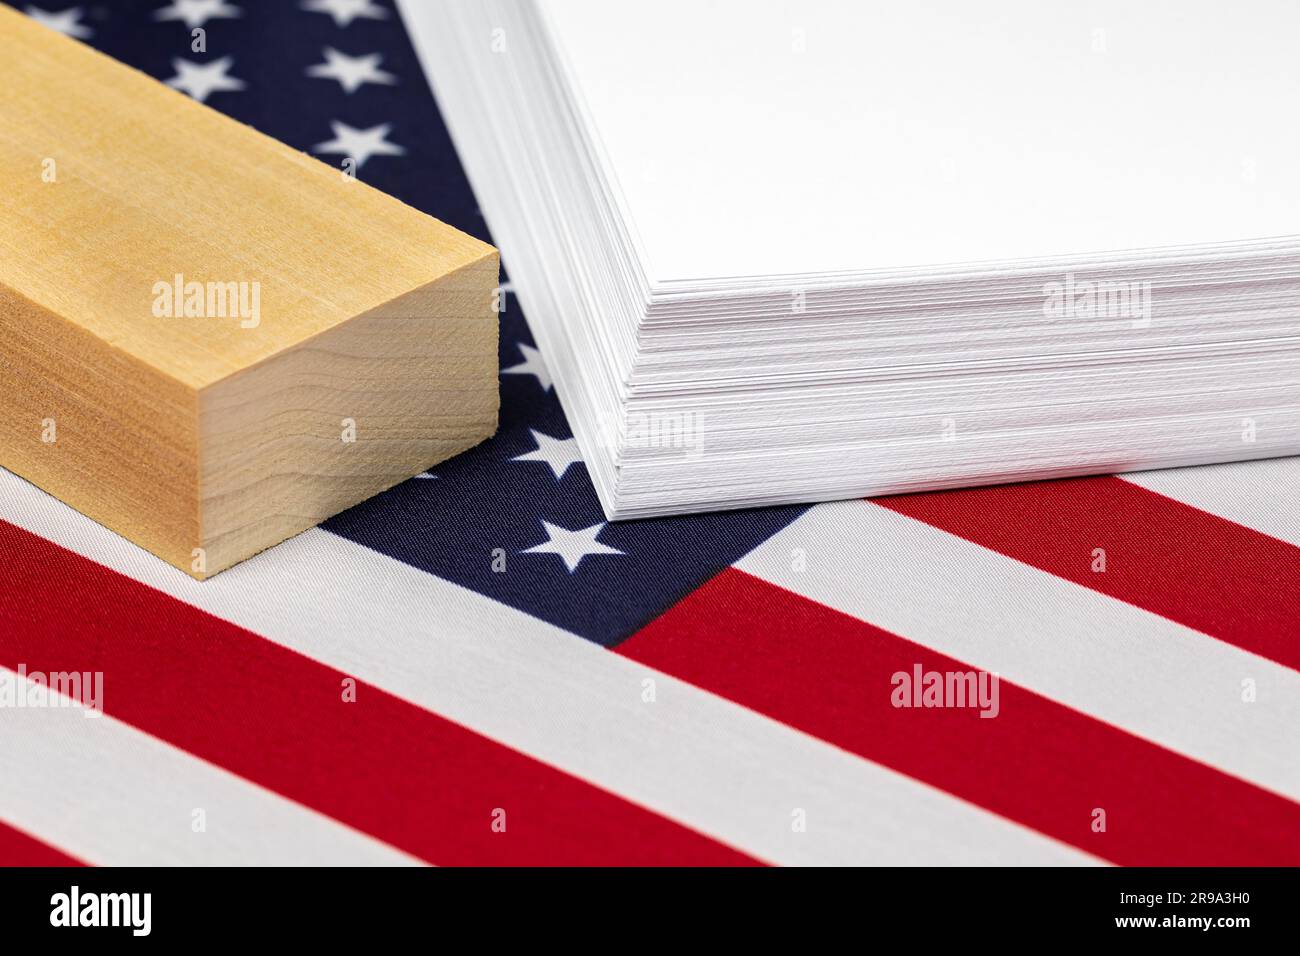 Rame de papier d'impression, bois et drapeau des États-Unis d'Amérique. Industrie des produits du papier, concept de commerce et de fabrication Banque D'Images